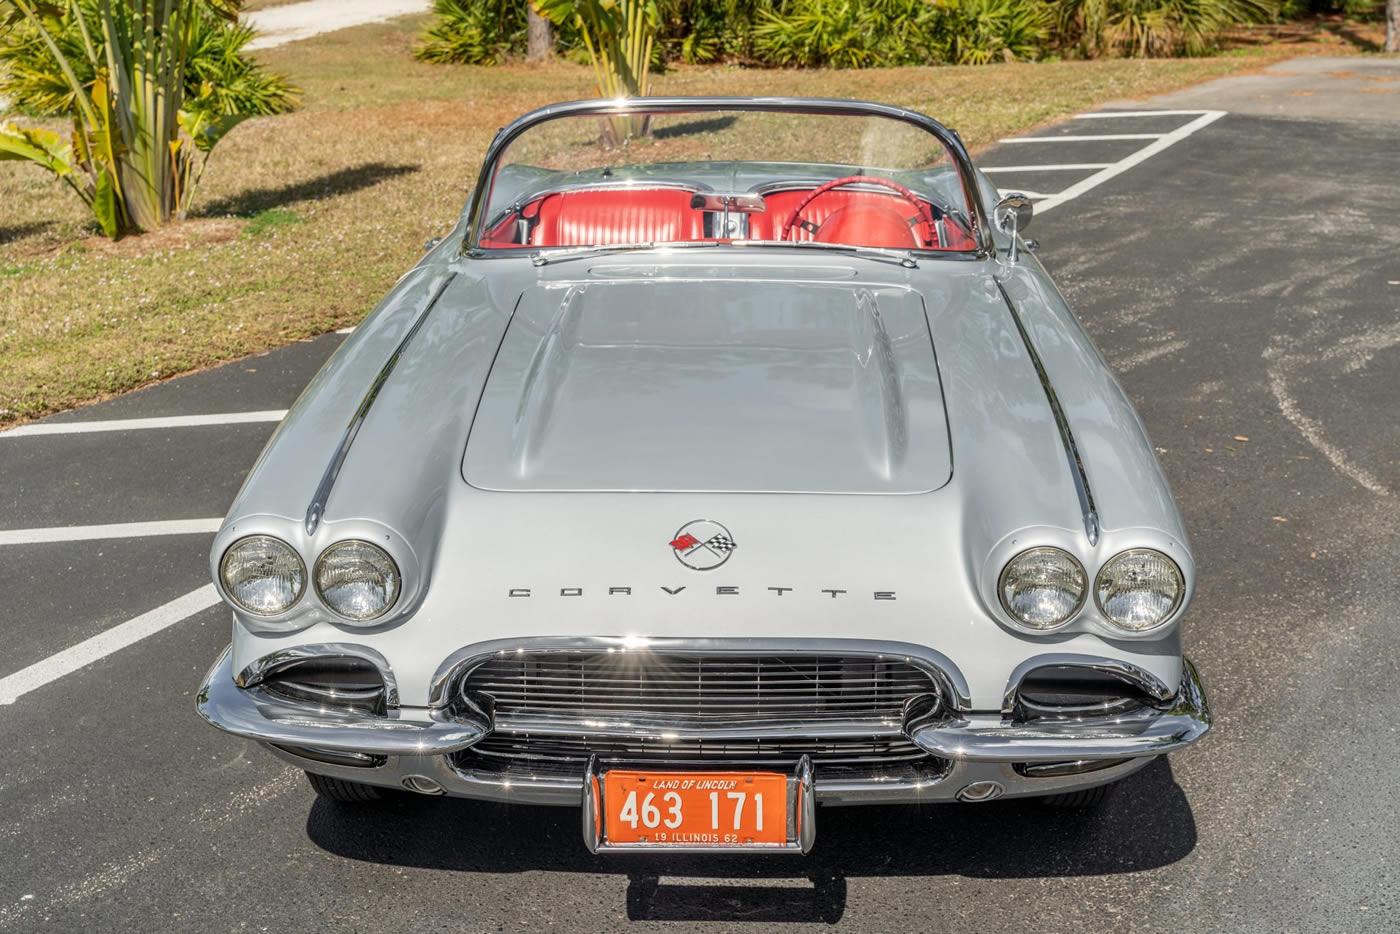 1962 Corvette in Sateen Silver